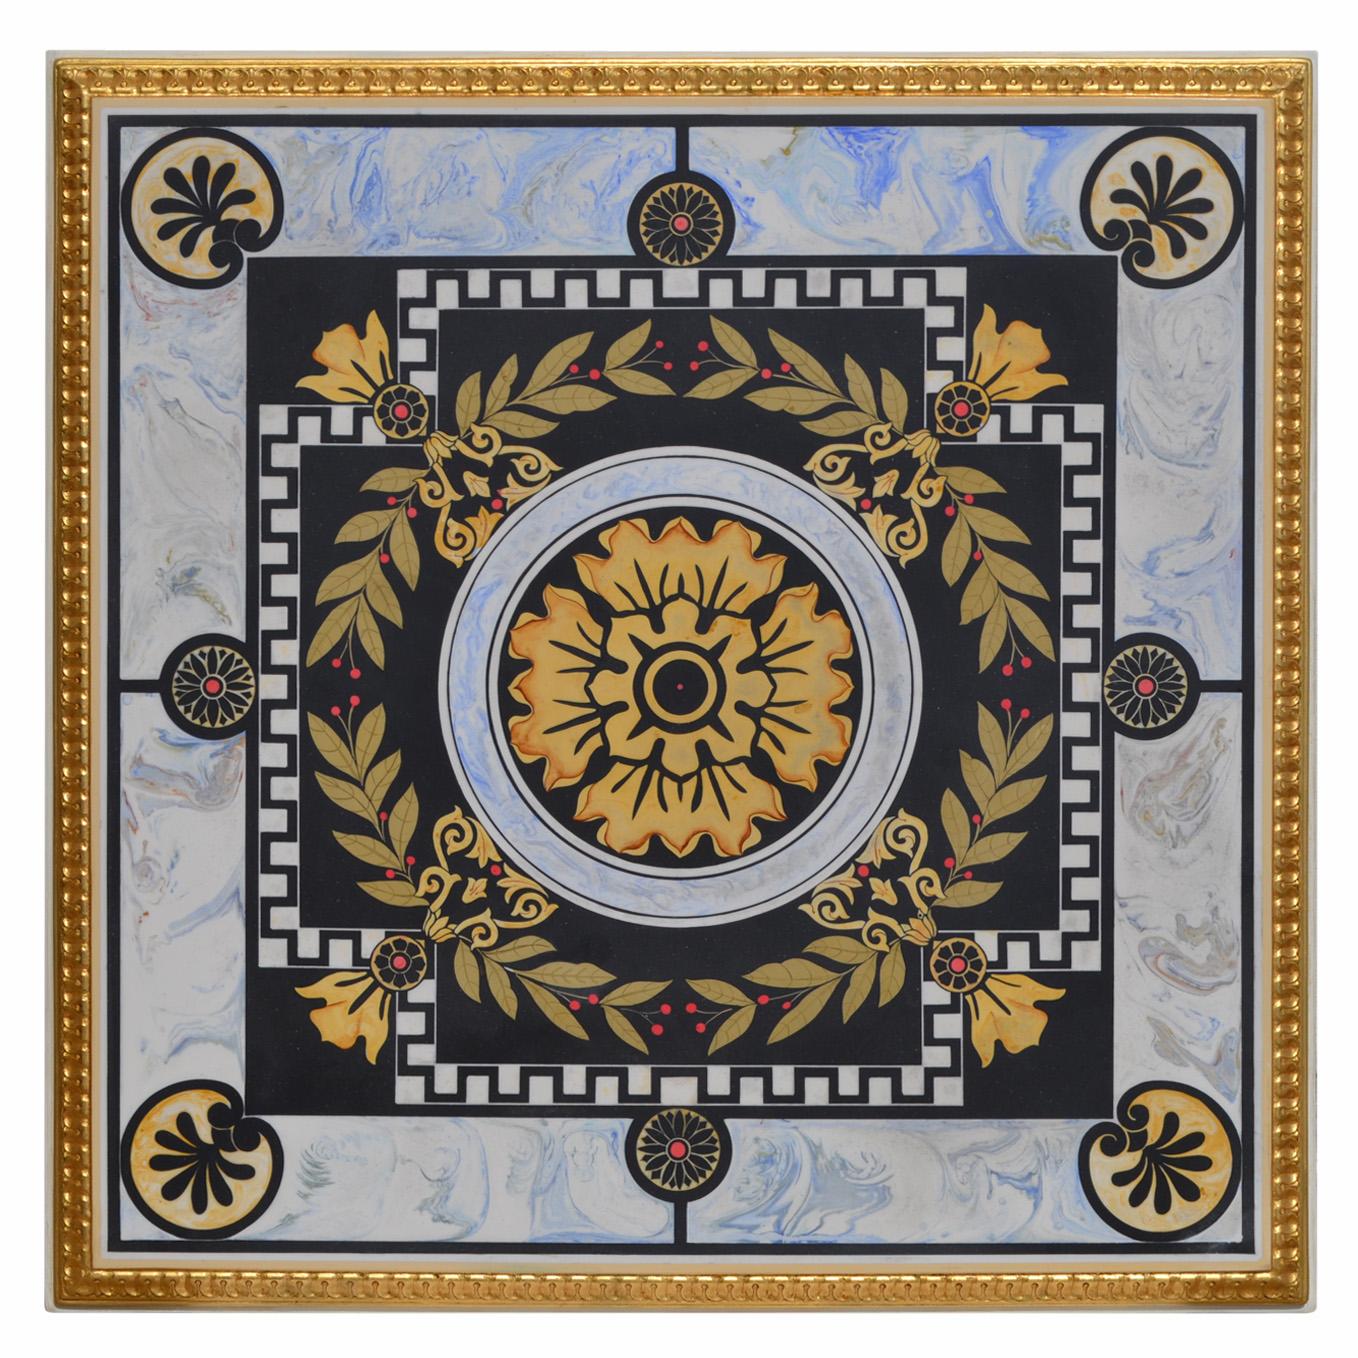 Handgefertigter Couchtisch mit kunstvoller Dekoration auf der quadratischen Platte und geschnitzter Kante, die durch Blattgold veredelt wird. Sockel aus königsblauem Marmor.
Die Größe ist cm. 63x63 H 45 / Zoll 24.80 